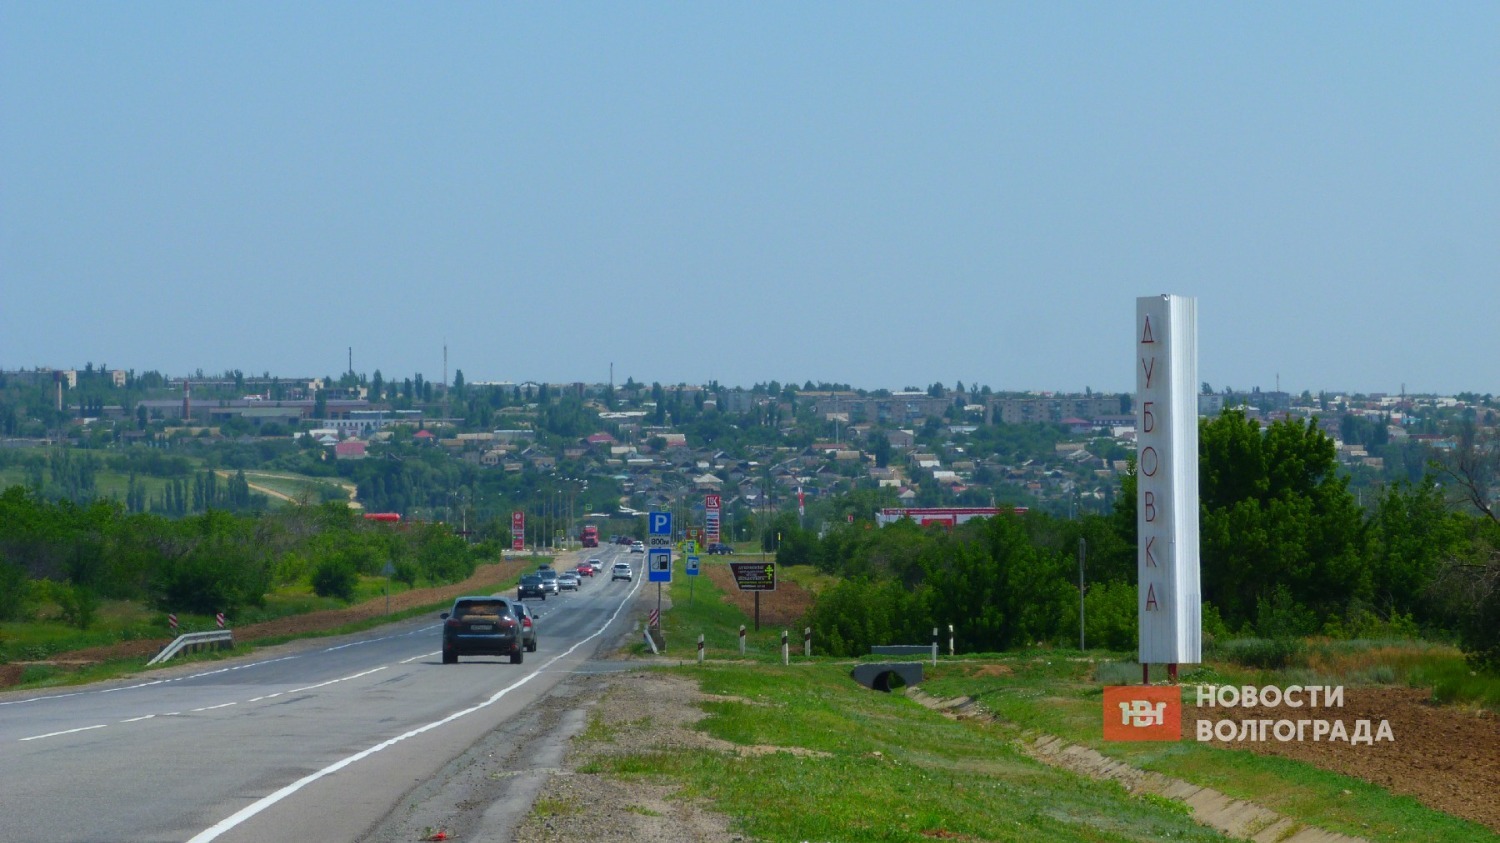 Александровский грабен находится в 100 километрах к северу от Волгограда